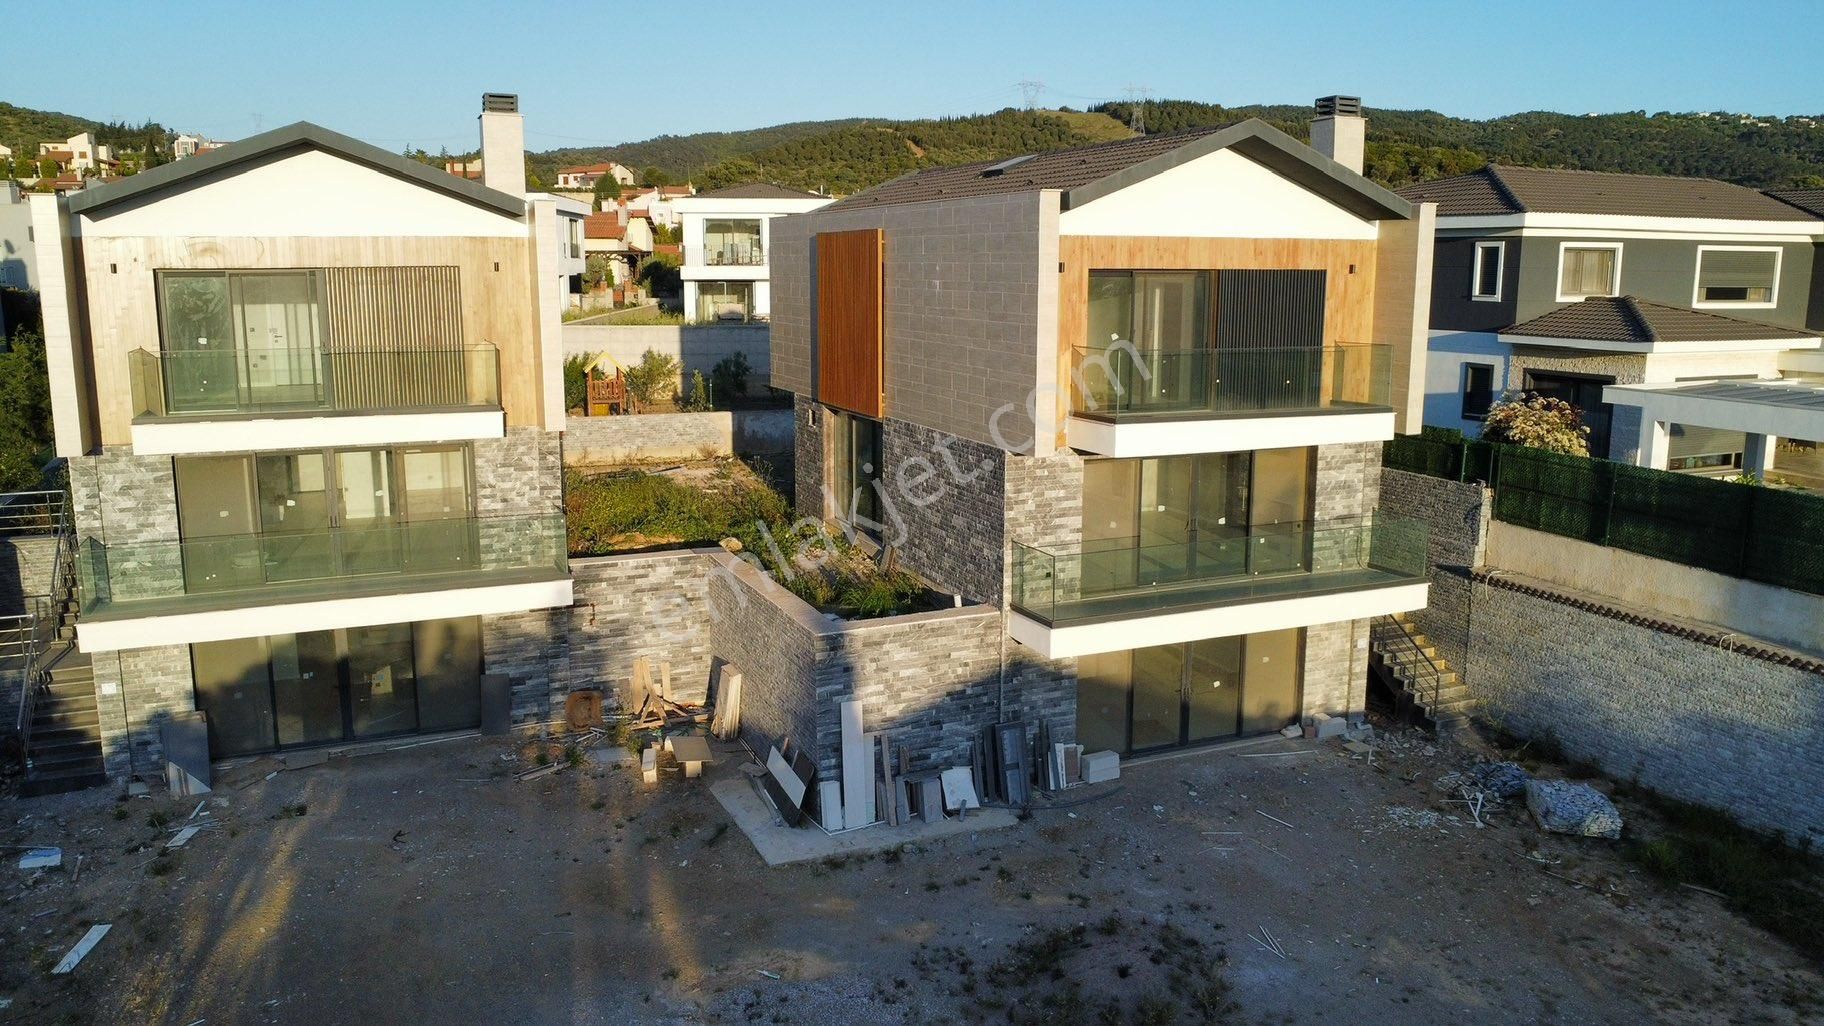 Urla Bademler Satılık Villa URLA BADEMLER'DE HEKİM KÖY SİTESİNDE SATILIK ASANSÖRLÜ TRİBLEX VİLLA